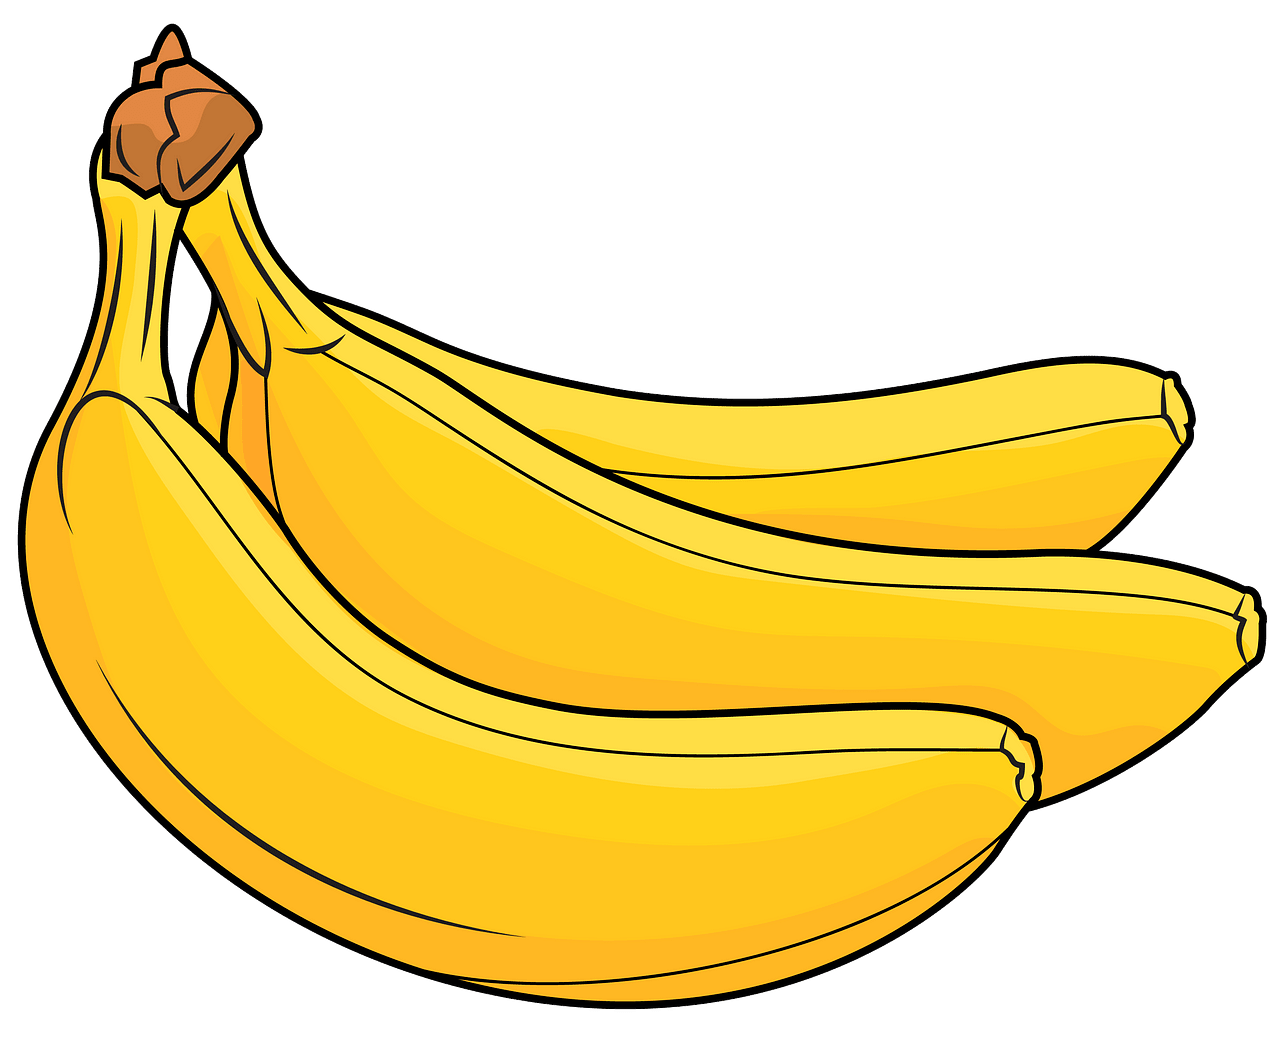 Banana clipart. Bananas free download creazilla